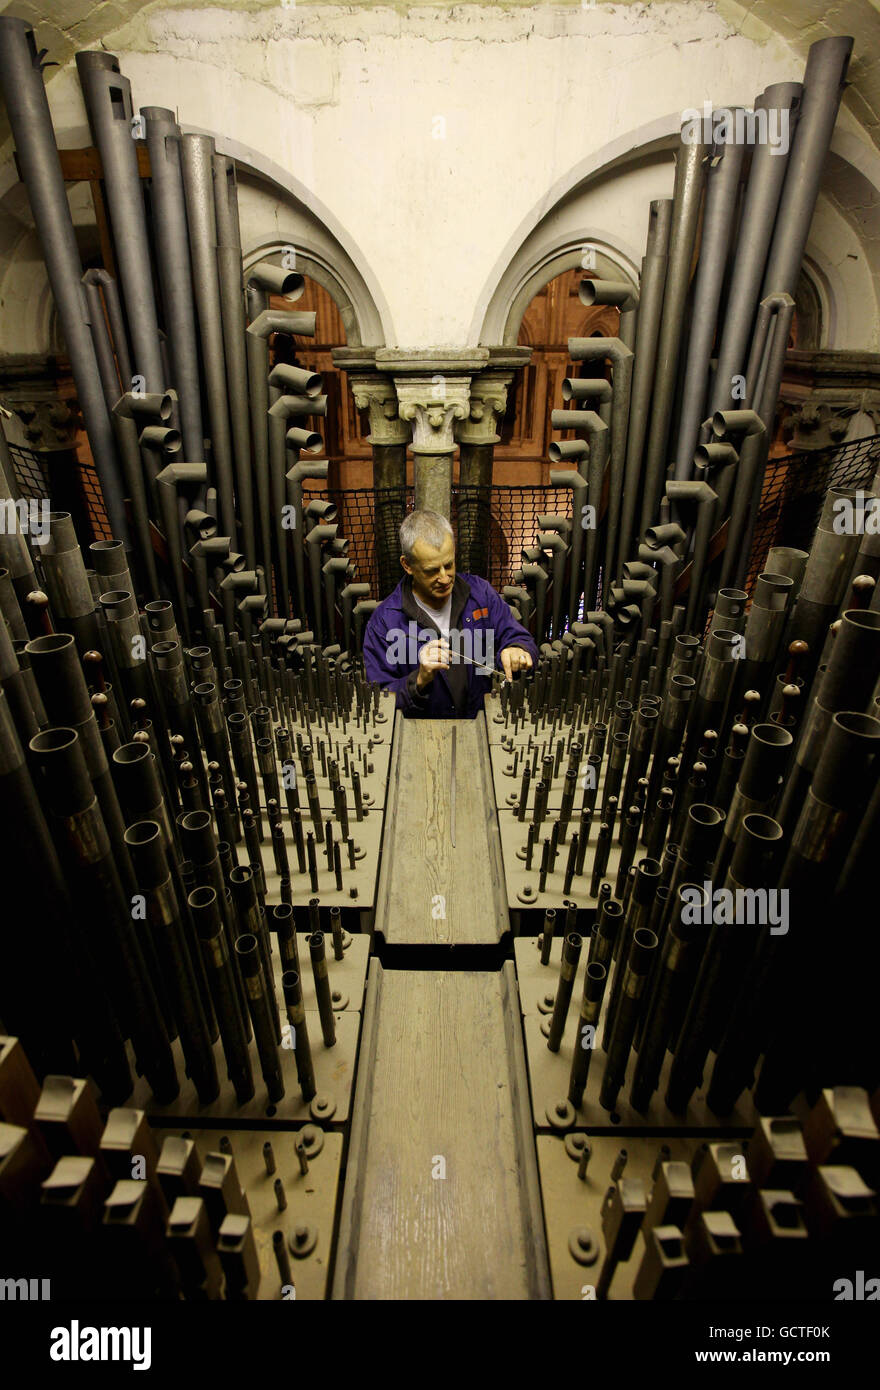 Orgues Tuner David Wintle au travail dans le loft d'orgue de la cathédrale de Canterbury à Canterbury, dans le Kent, en écoutant l'un des plus de 3000 tuyaux dans le loft qui composent l'orgue dont certaines parties ont plus de 300 ans. Banque D'Images